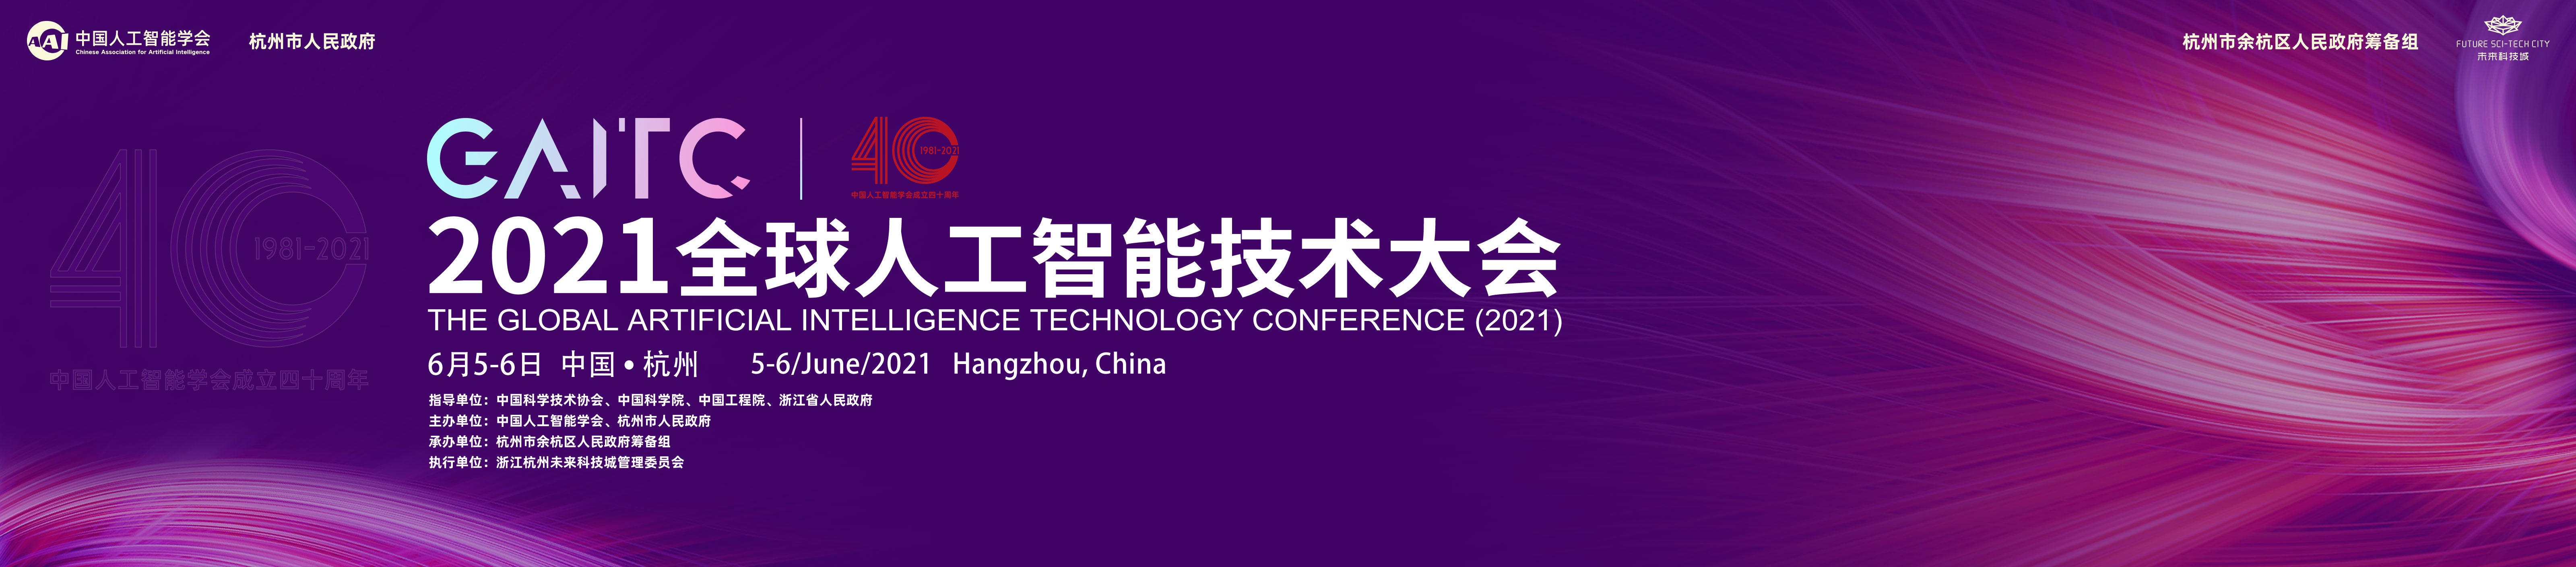 2021全球人工智能技术大会